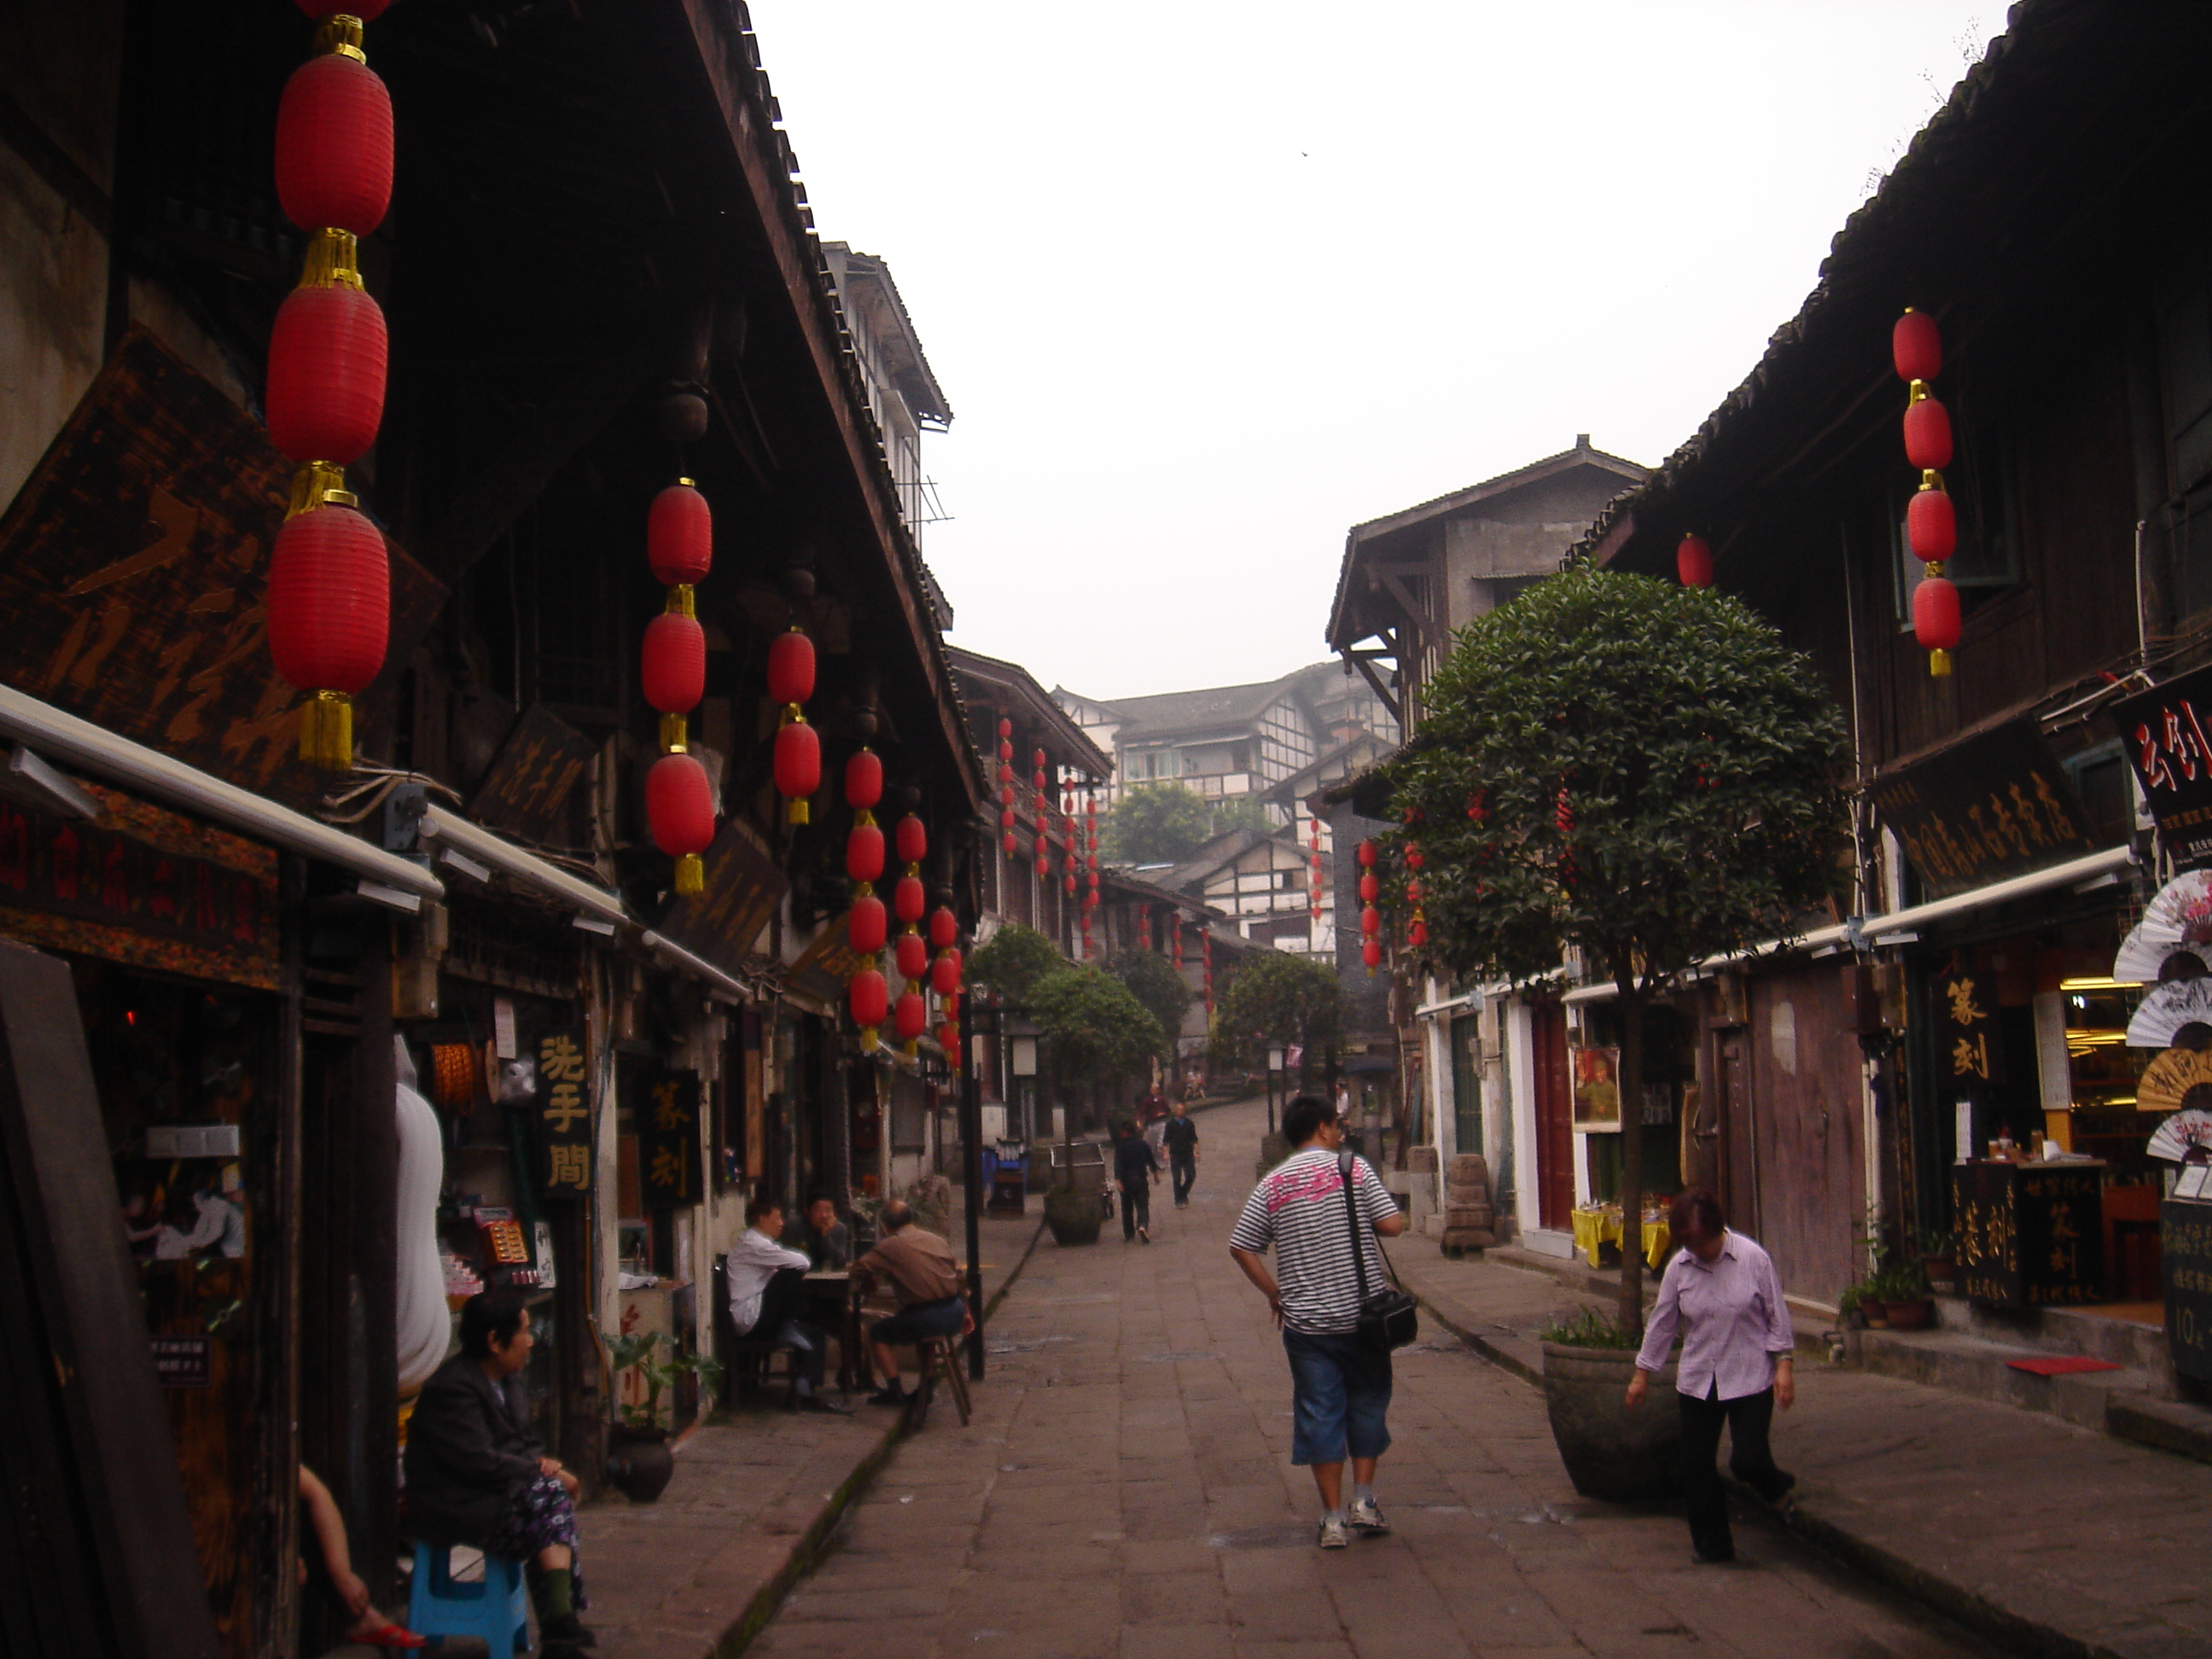 【携程攻略】重庆磁器口古镇景点,算是重庆最好玩的地方了，有点像厦门鼓浪屿的小街，有一条小巷子很多…